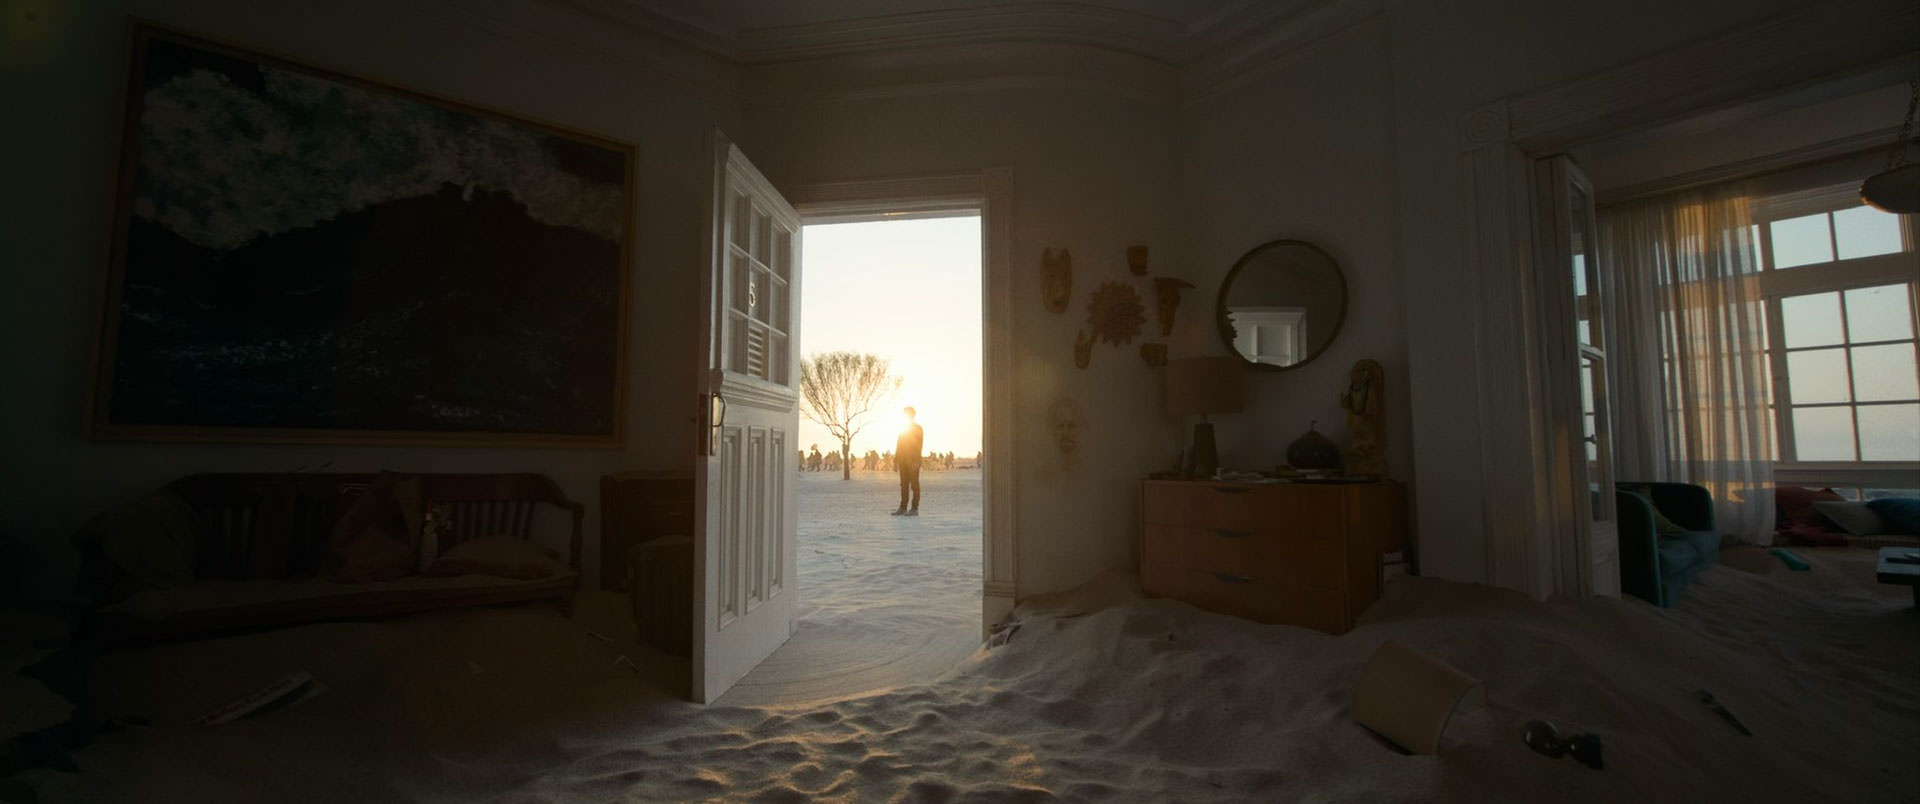 خانه‌ای پر از ماسه با دری باز که بیرونش مردی قابل‌رویت است و از طریقش نور به داخل خانه می‌تابد در عکسی رسمی از فیلم باردو به کارگردانی الخاندرو گونسالس اینیاریتو